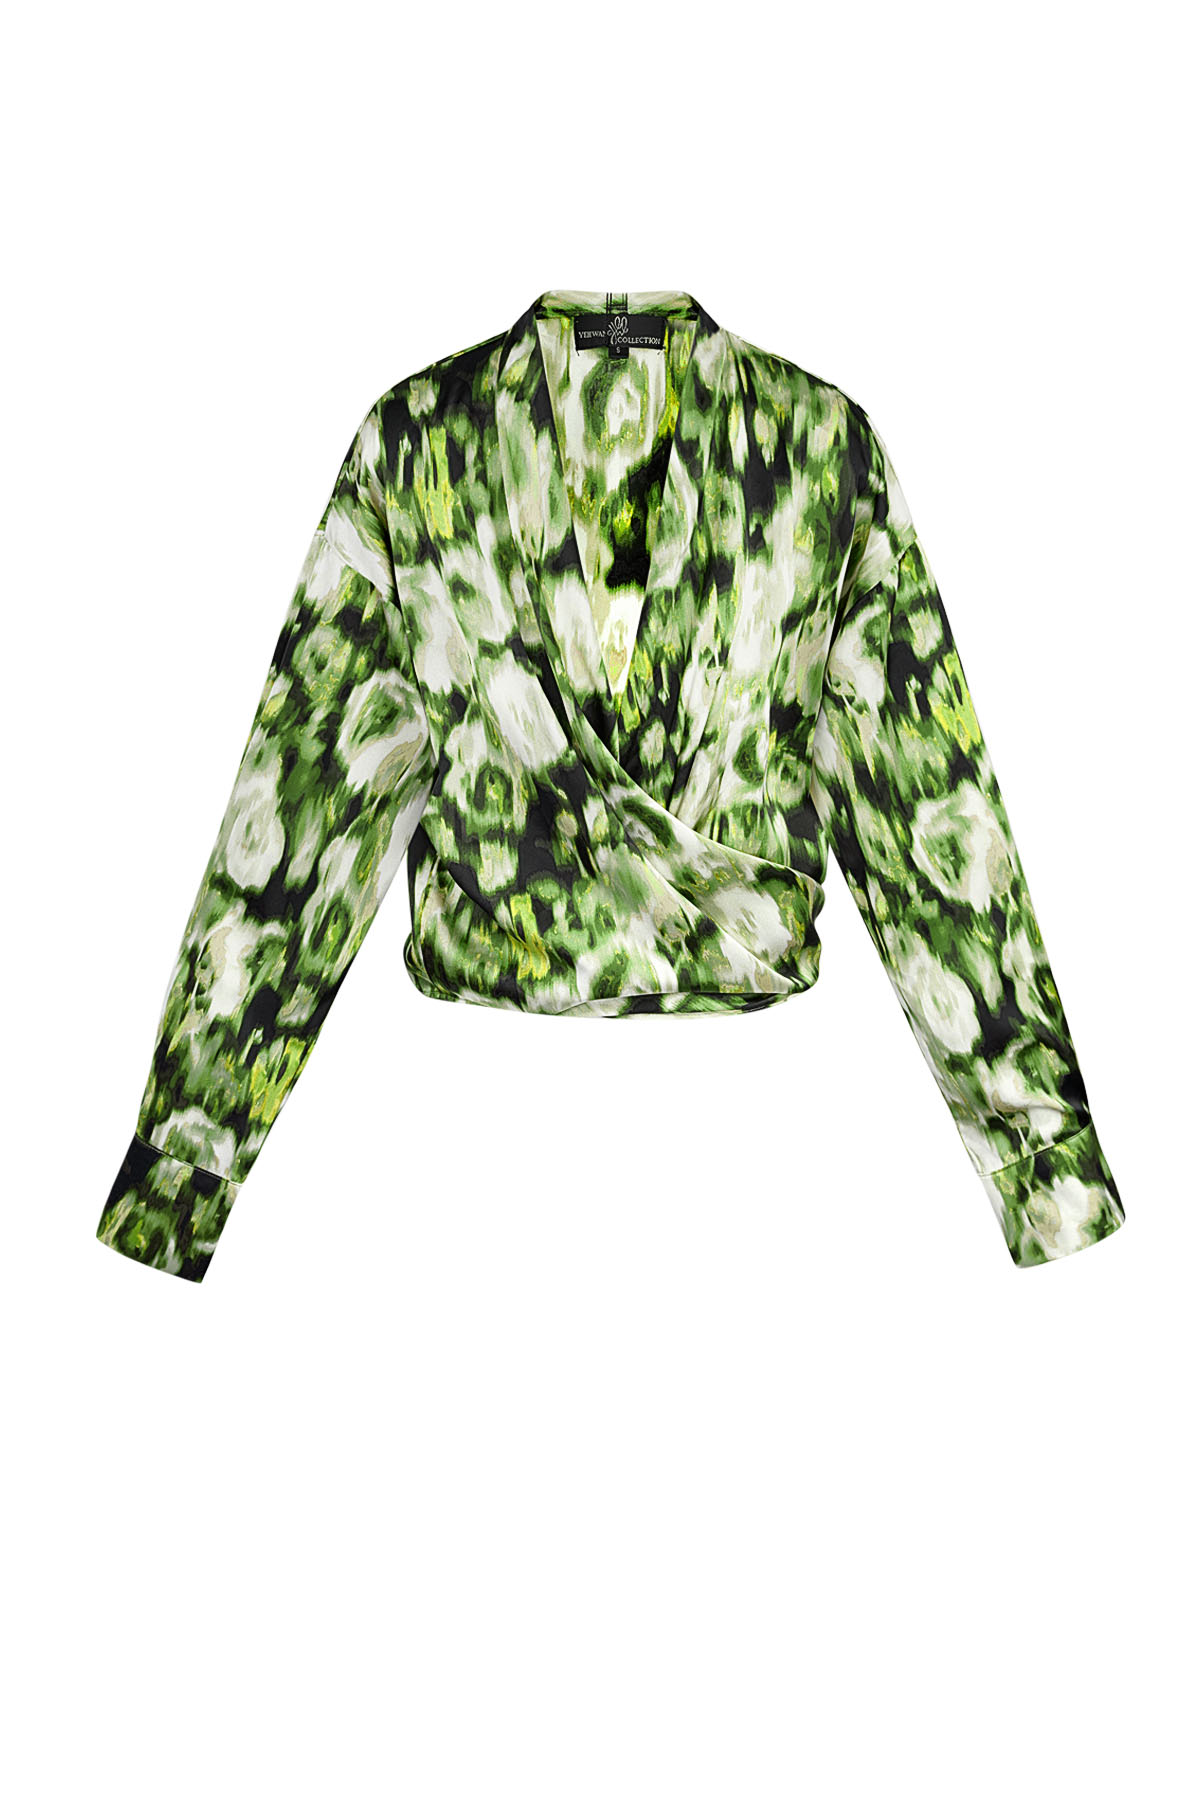 Wrap blouse tiger print - green